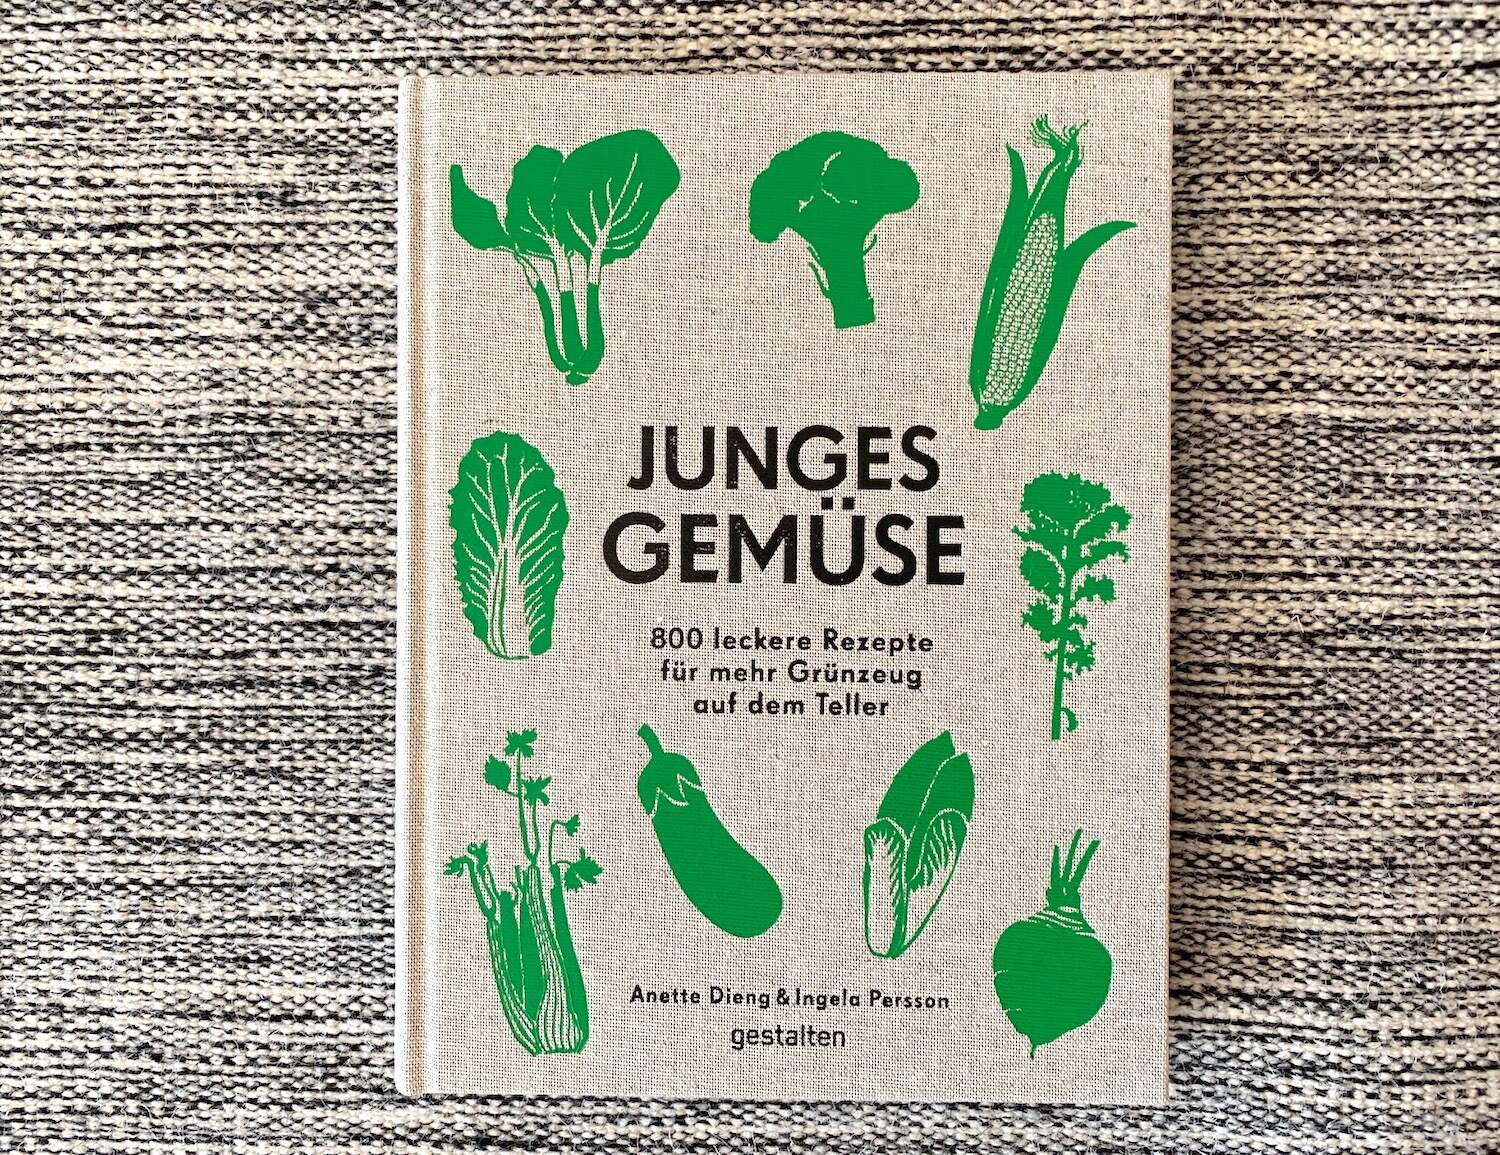 Gemüse-Kochbuch "Junges Gemüse"